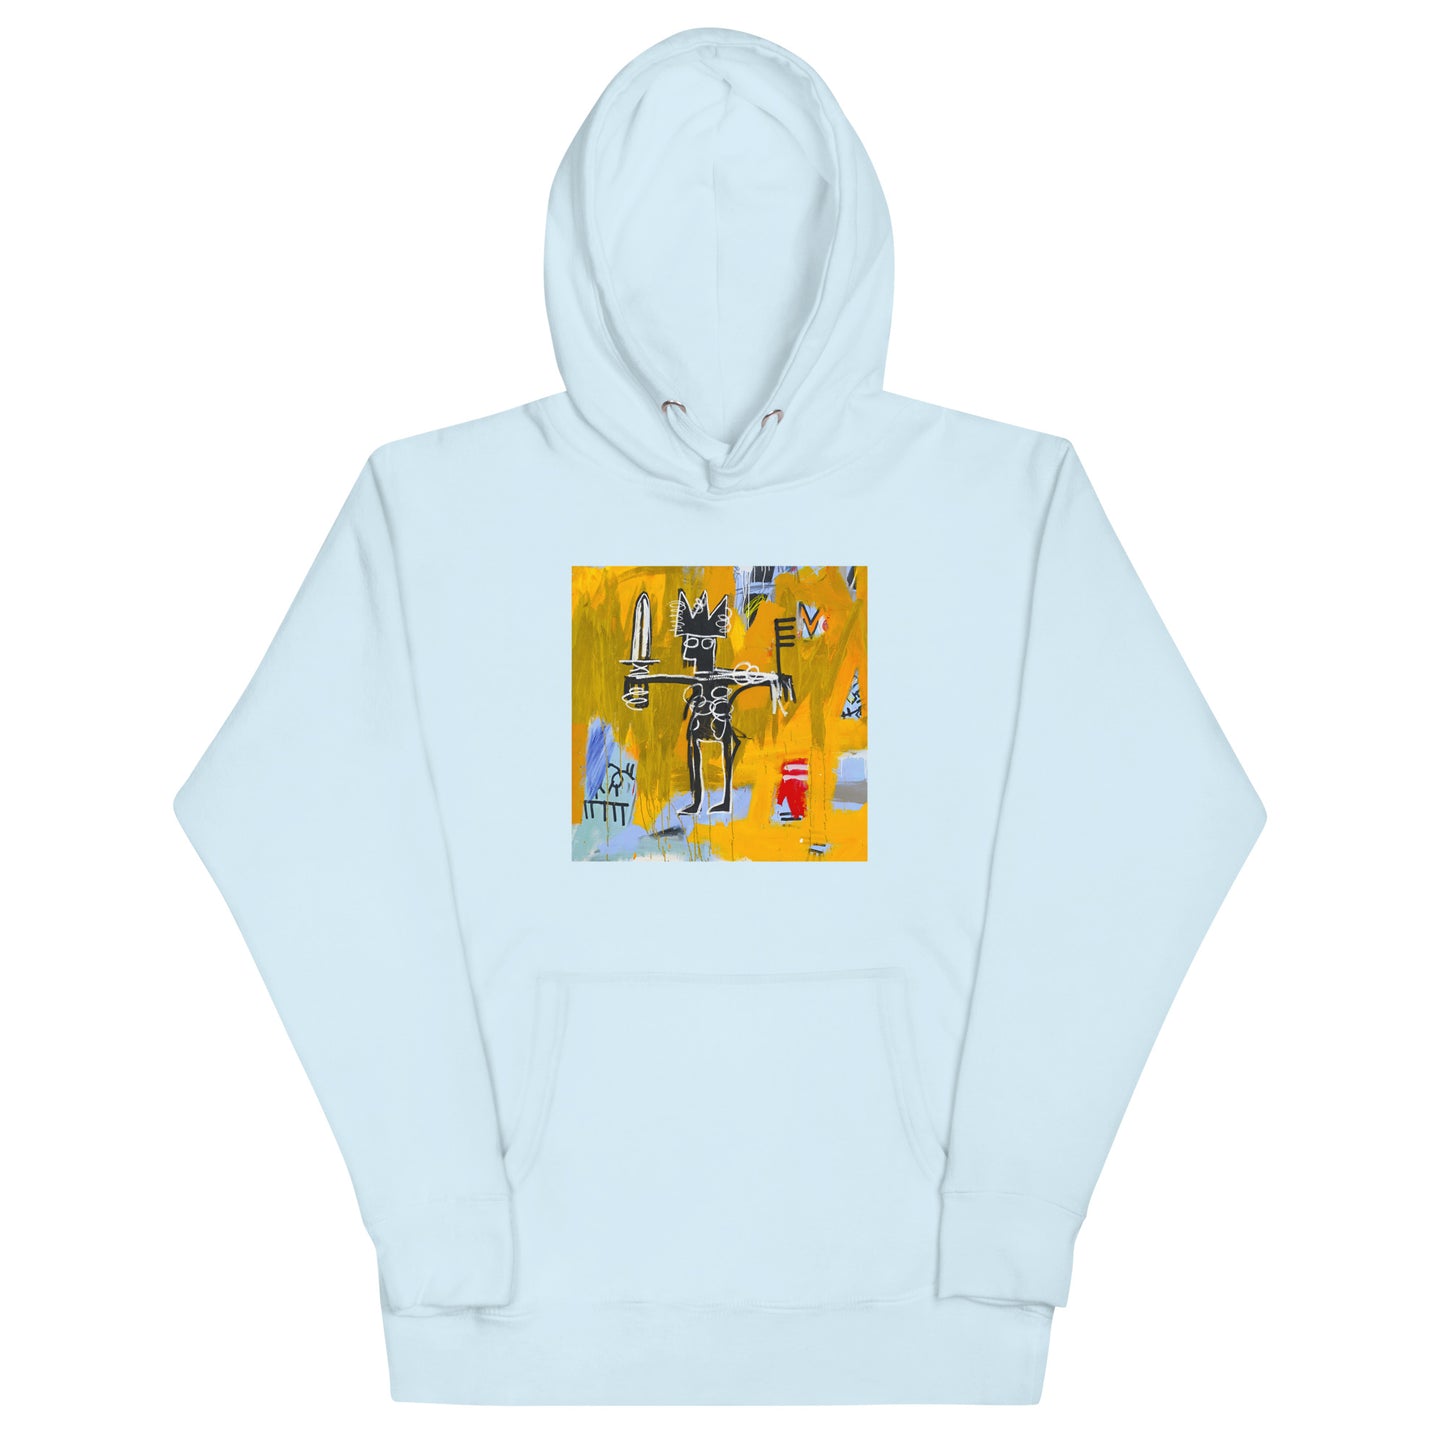 Jean-Michel Basquiat "Julius Caesar on Gold" Artwork Printed Premium Streetwear Sweatshirt Hoodie Ice Blue